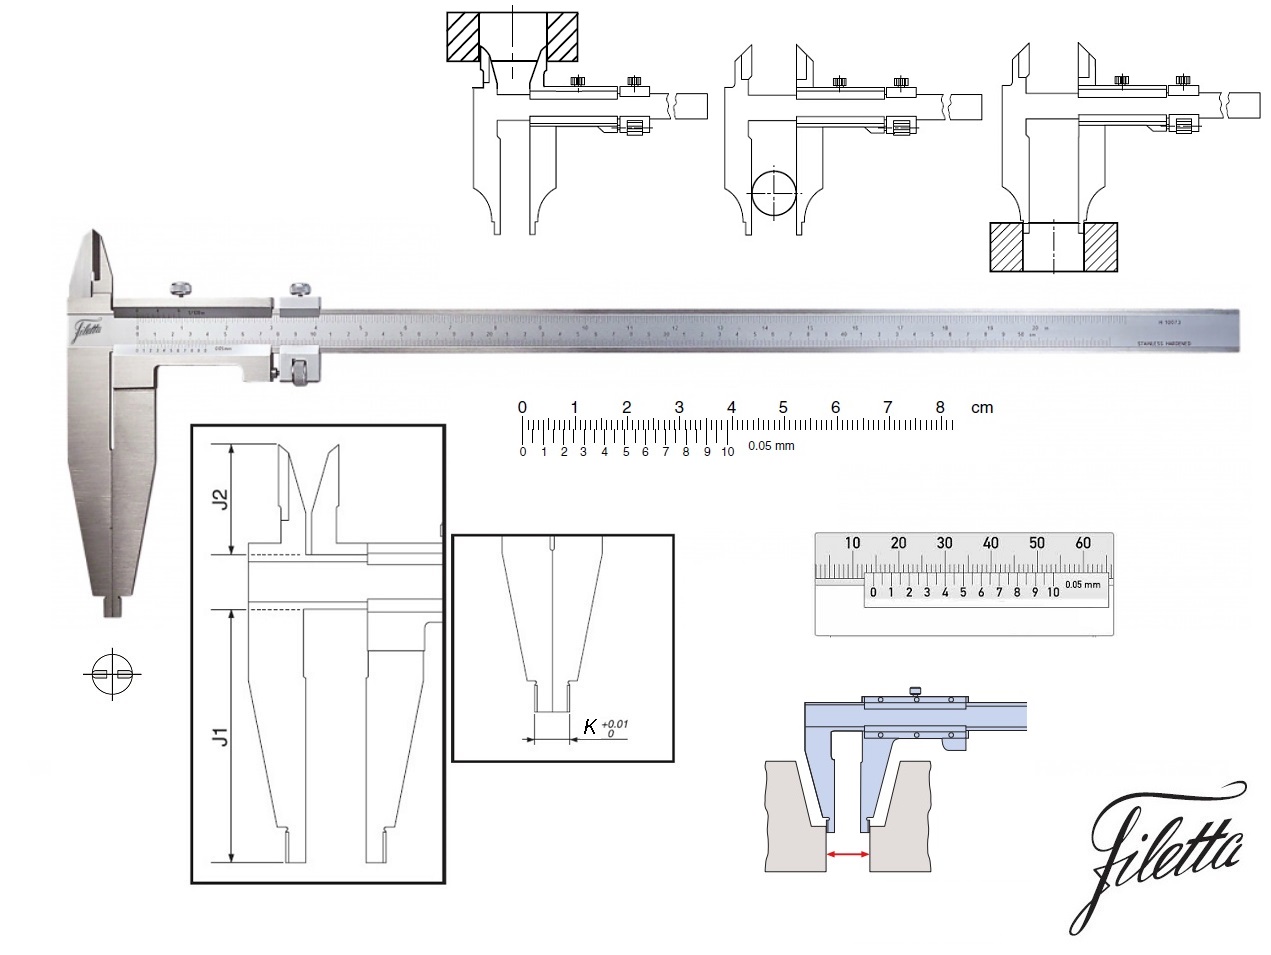 Posuvné měřítko Filetta 0-750 mm, čelisti 150 mm, s měřicími nožíky pro vnitřní měření